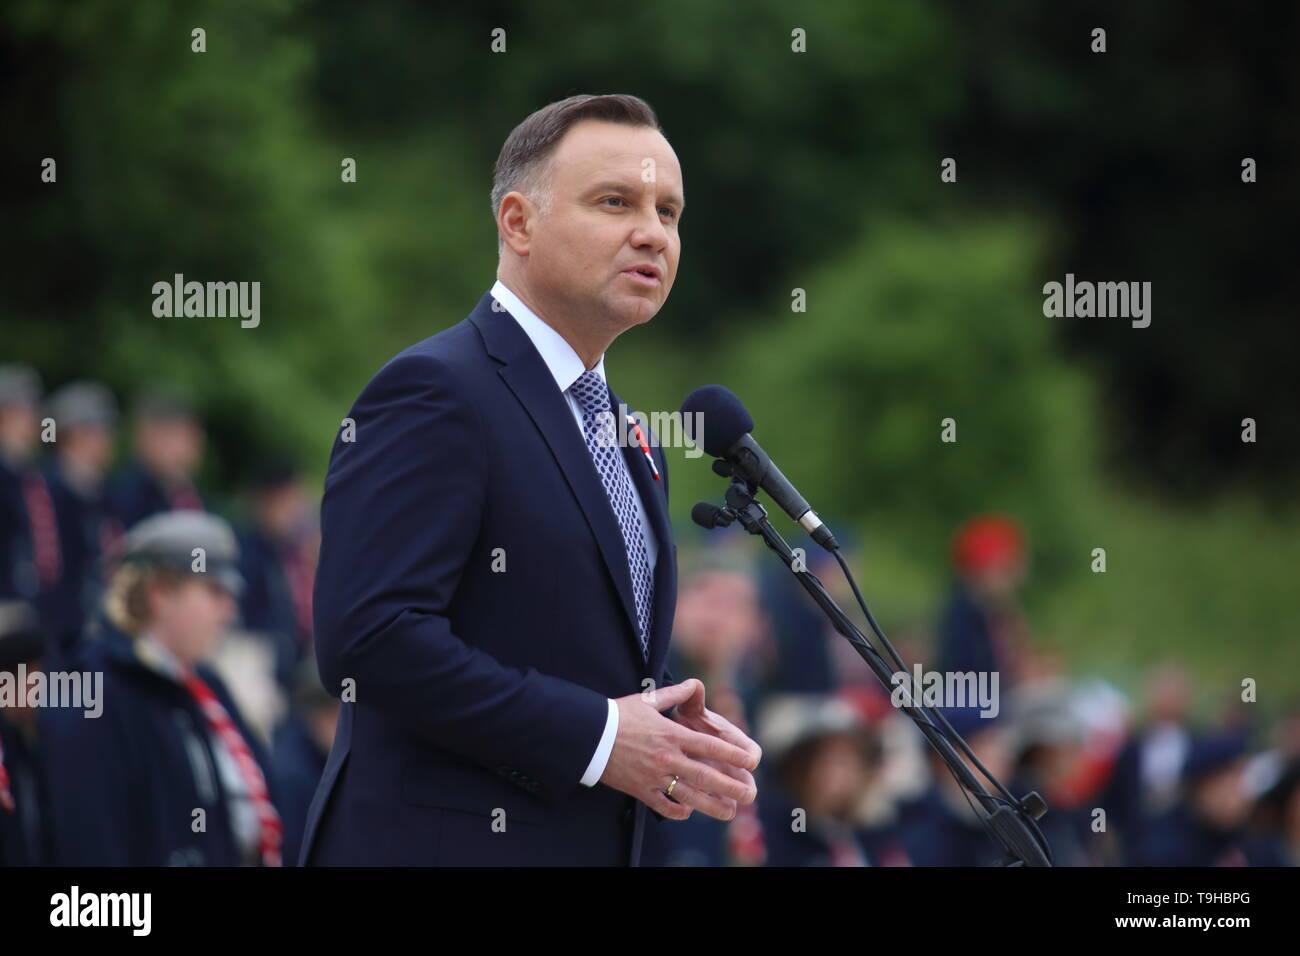 Cassino, Italia - 18 de mayo de 2019: El discurso del Presidente de la República de Polonia, Andrzej Duda en el cementerio militar polaco por el 75º aniversario de la batalla de Montecassino Foto de stock